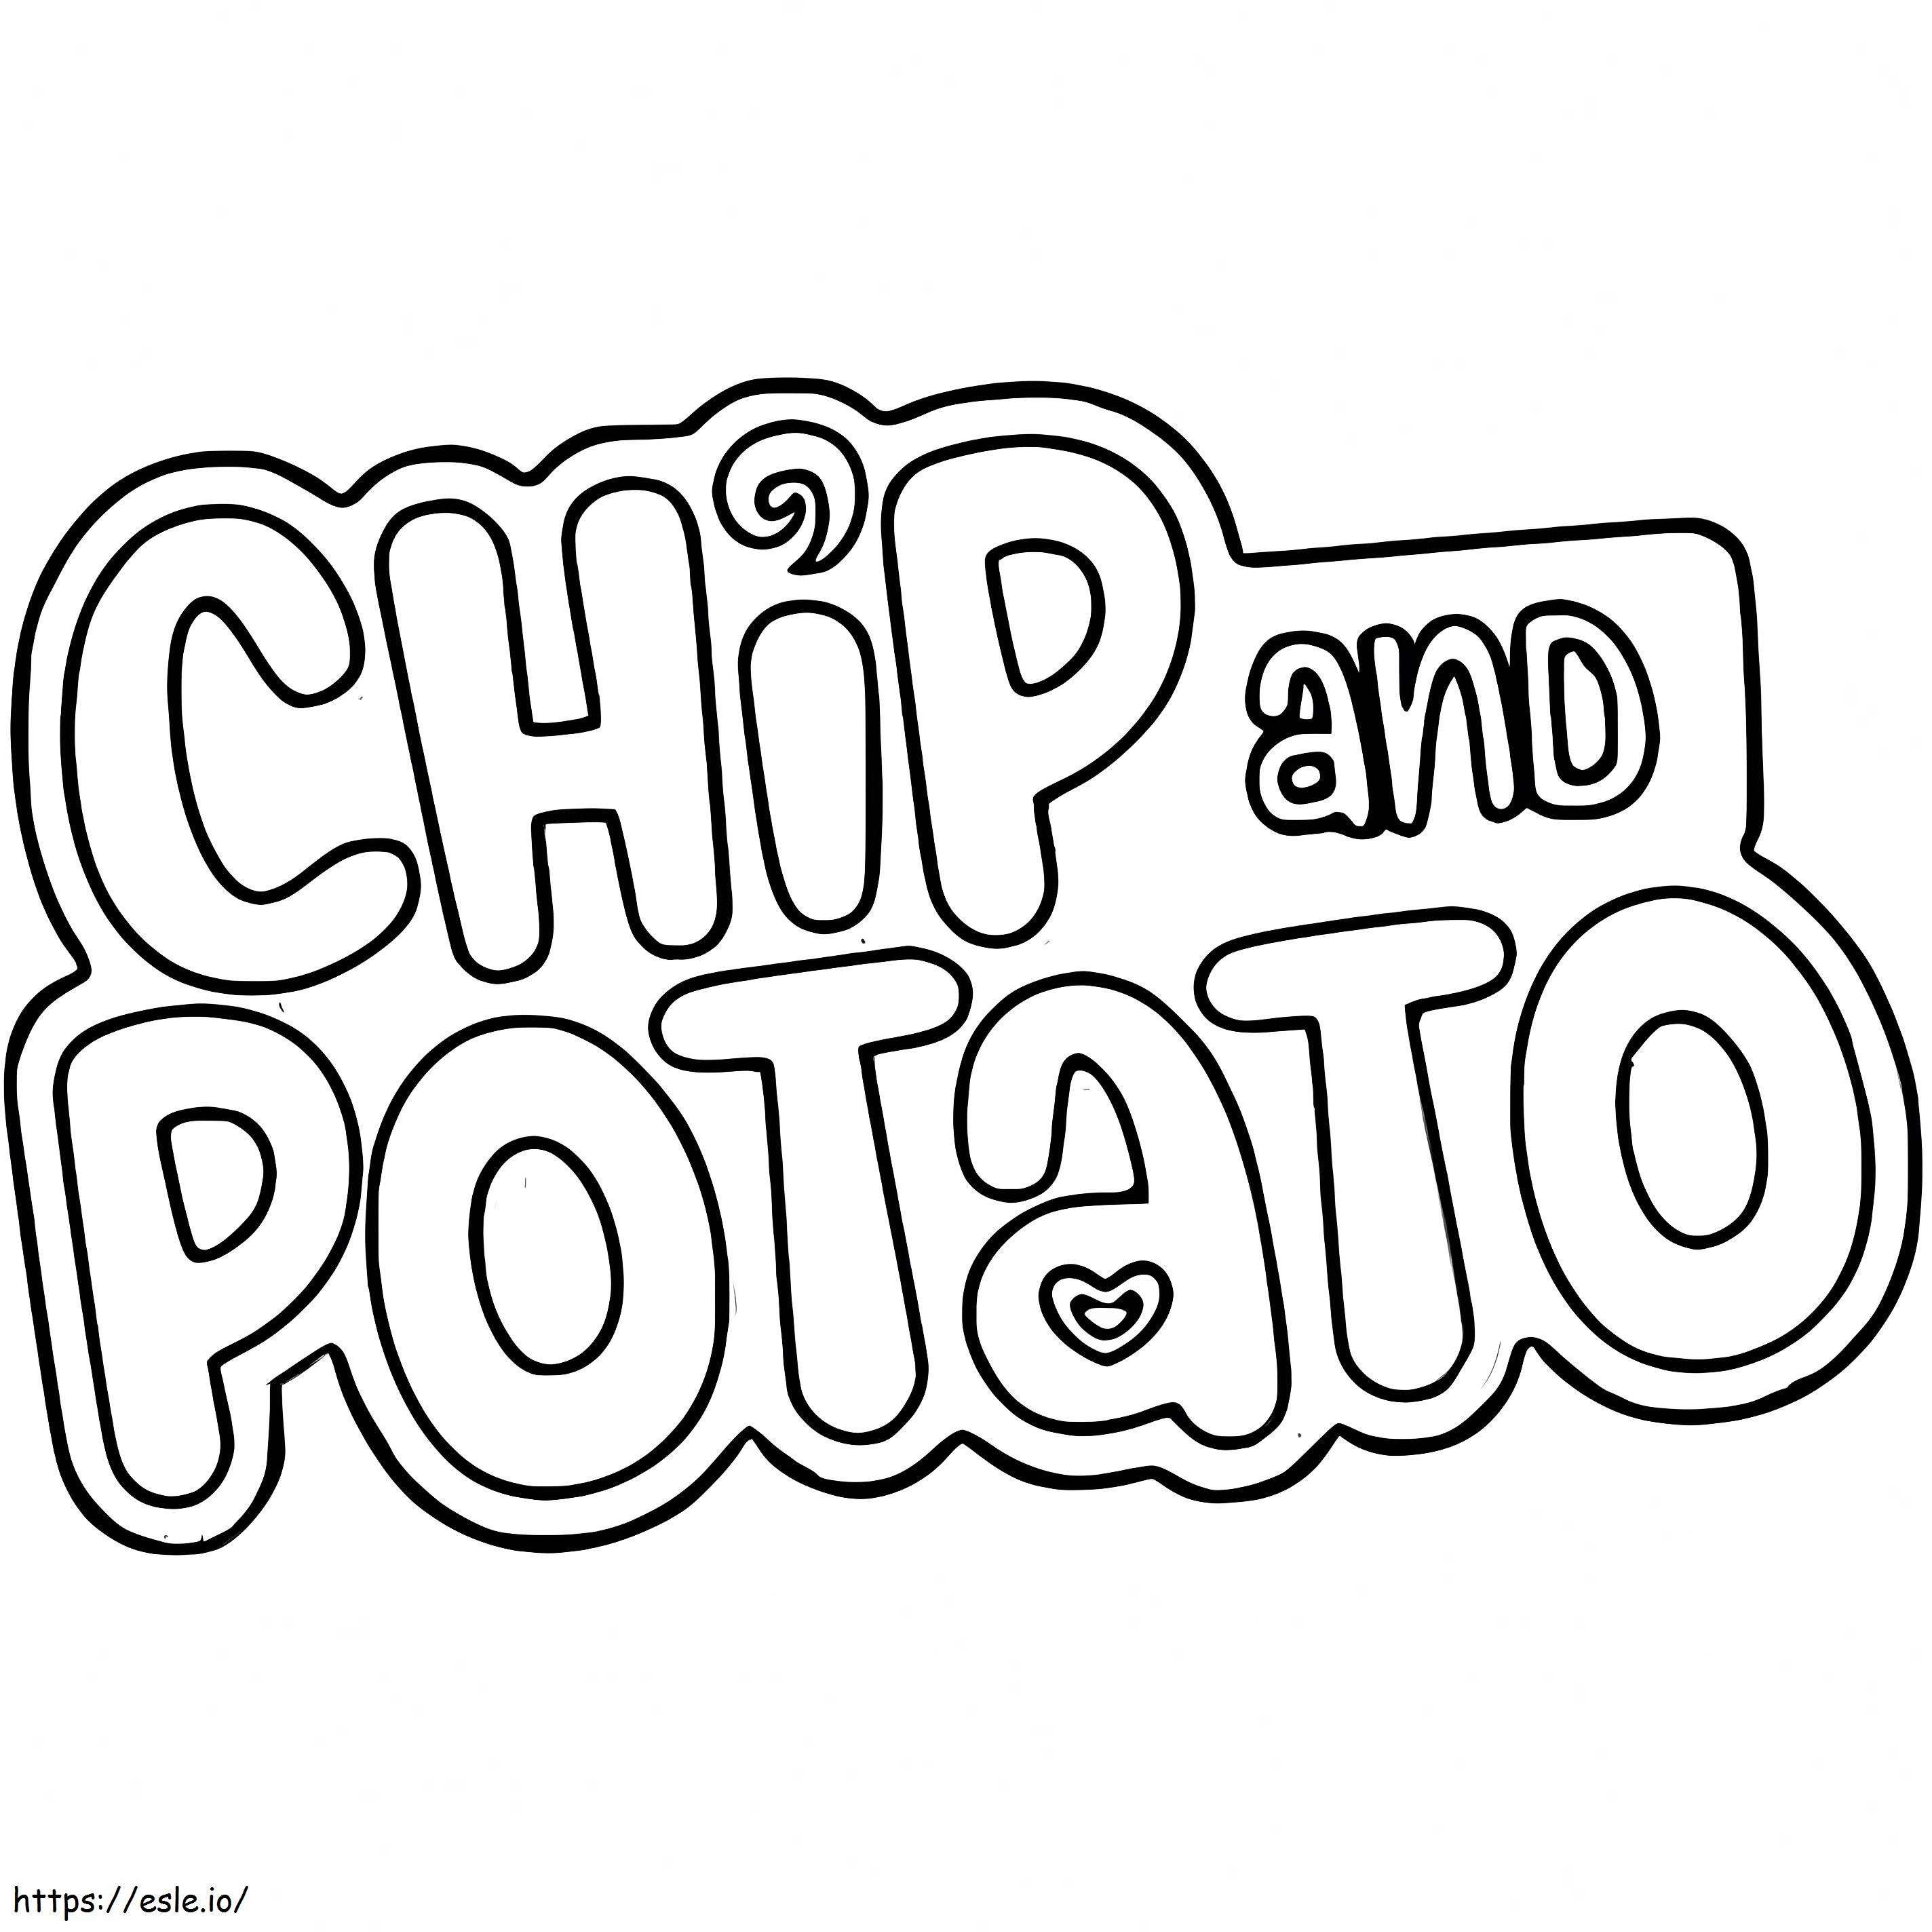 Chip e batata com logotipo para colorir